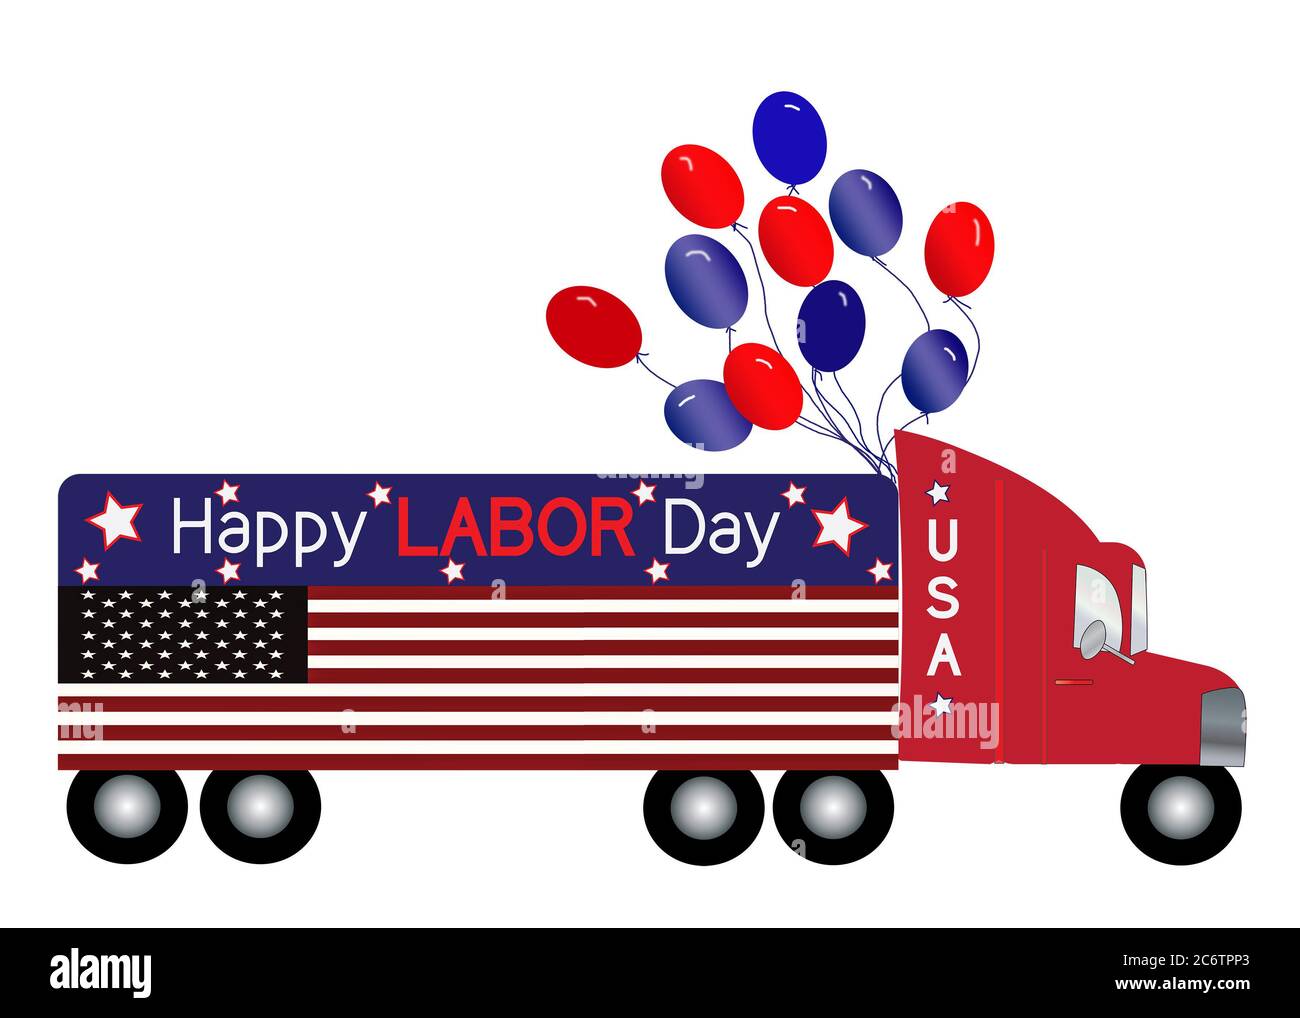 Fête des Etats-Unis, Fête du travail, illustration graphique d'un grand semi-camion décoré patriotiquement avec le drapeau américain sur toute la longueur du camion Banque D'Images